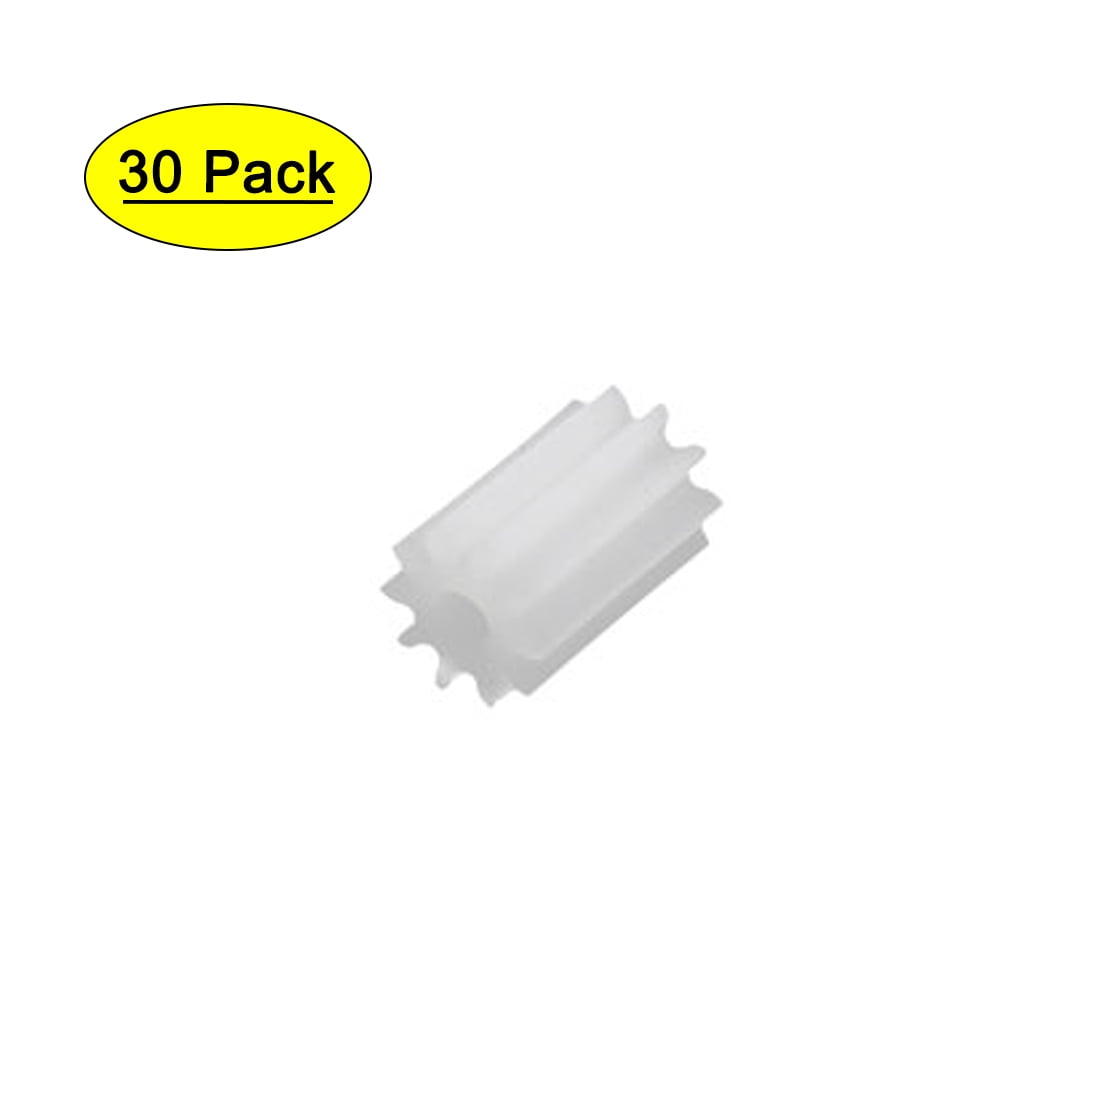 30Pcs 0.5 Modulus 8 Teeth Plastic Gear Cog for 2mm Toy Car Motor Shaft P6N8 